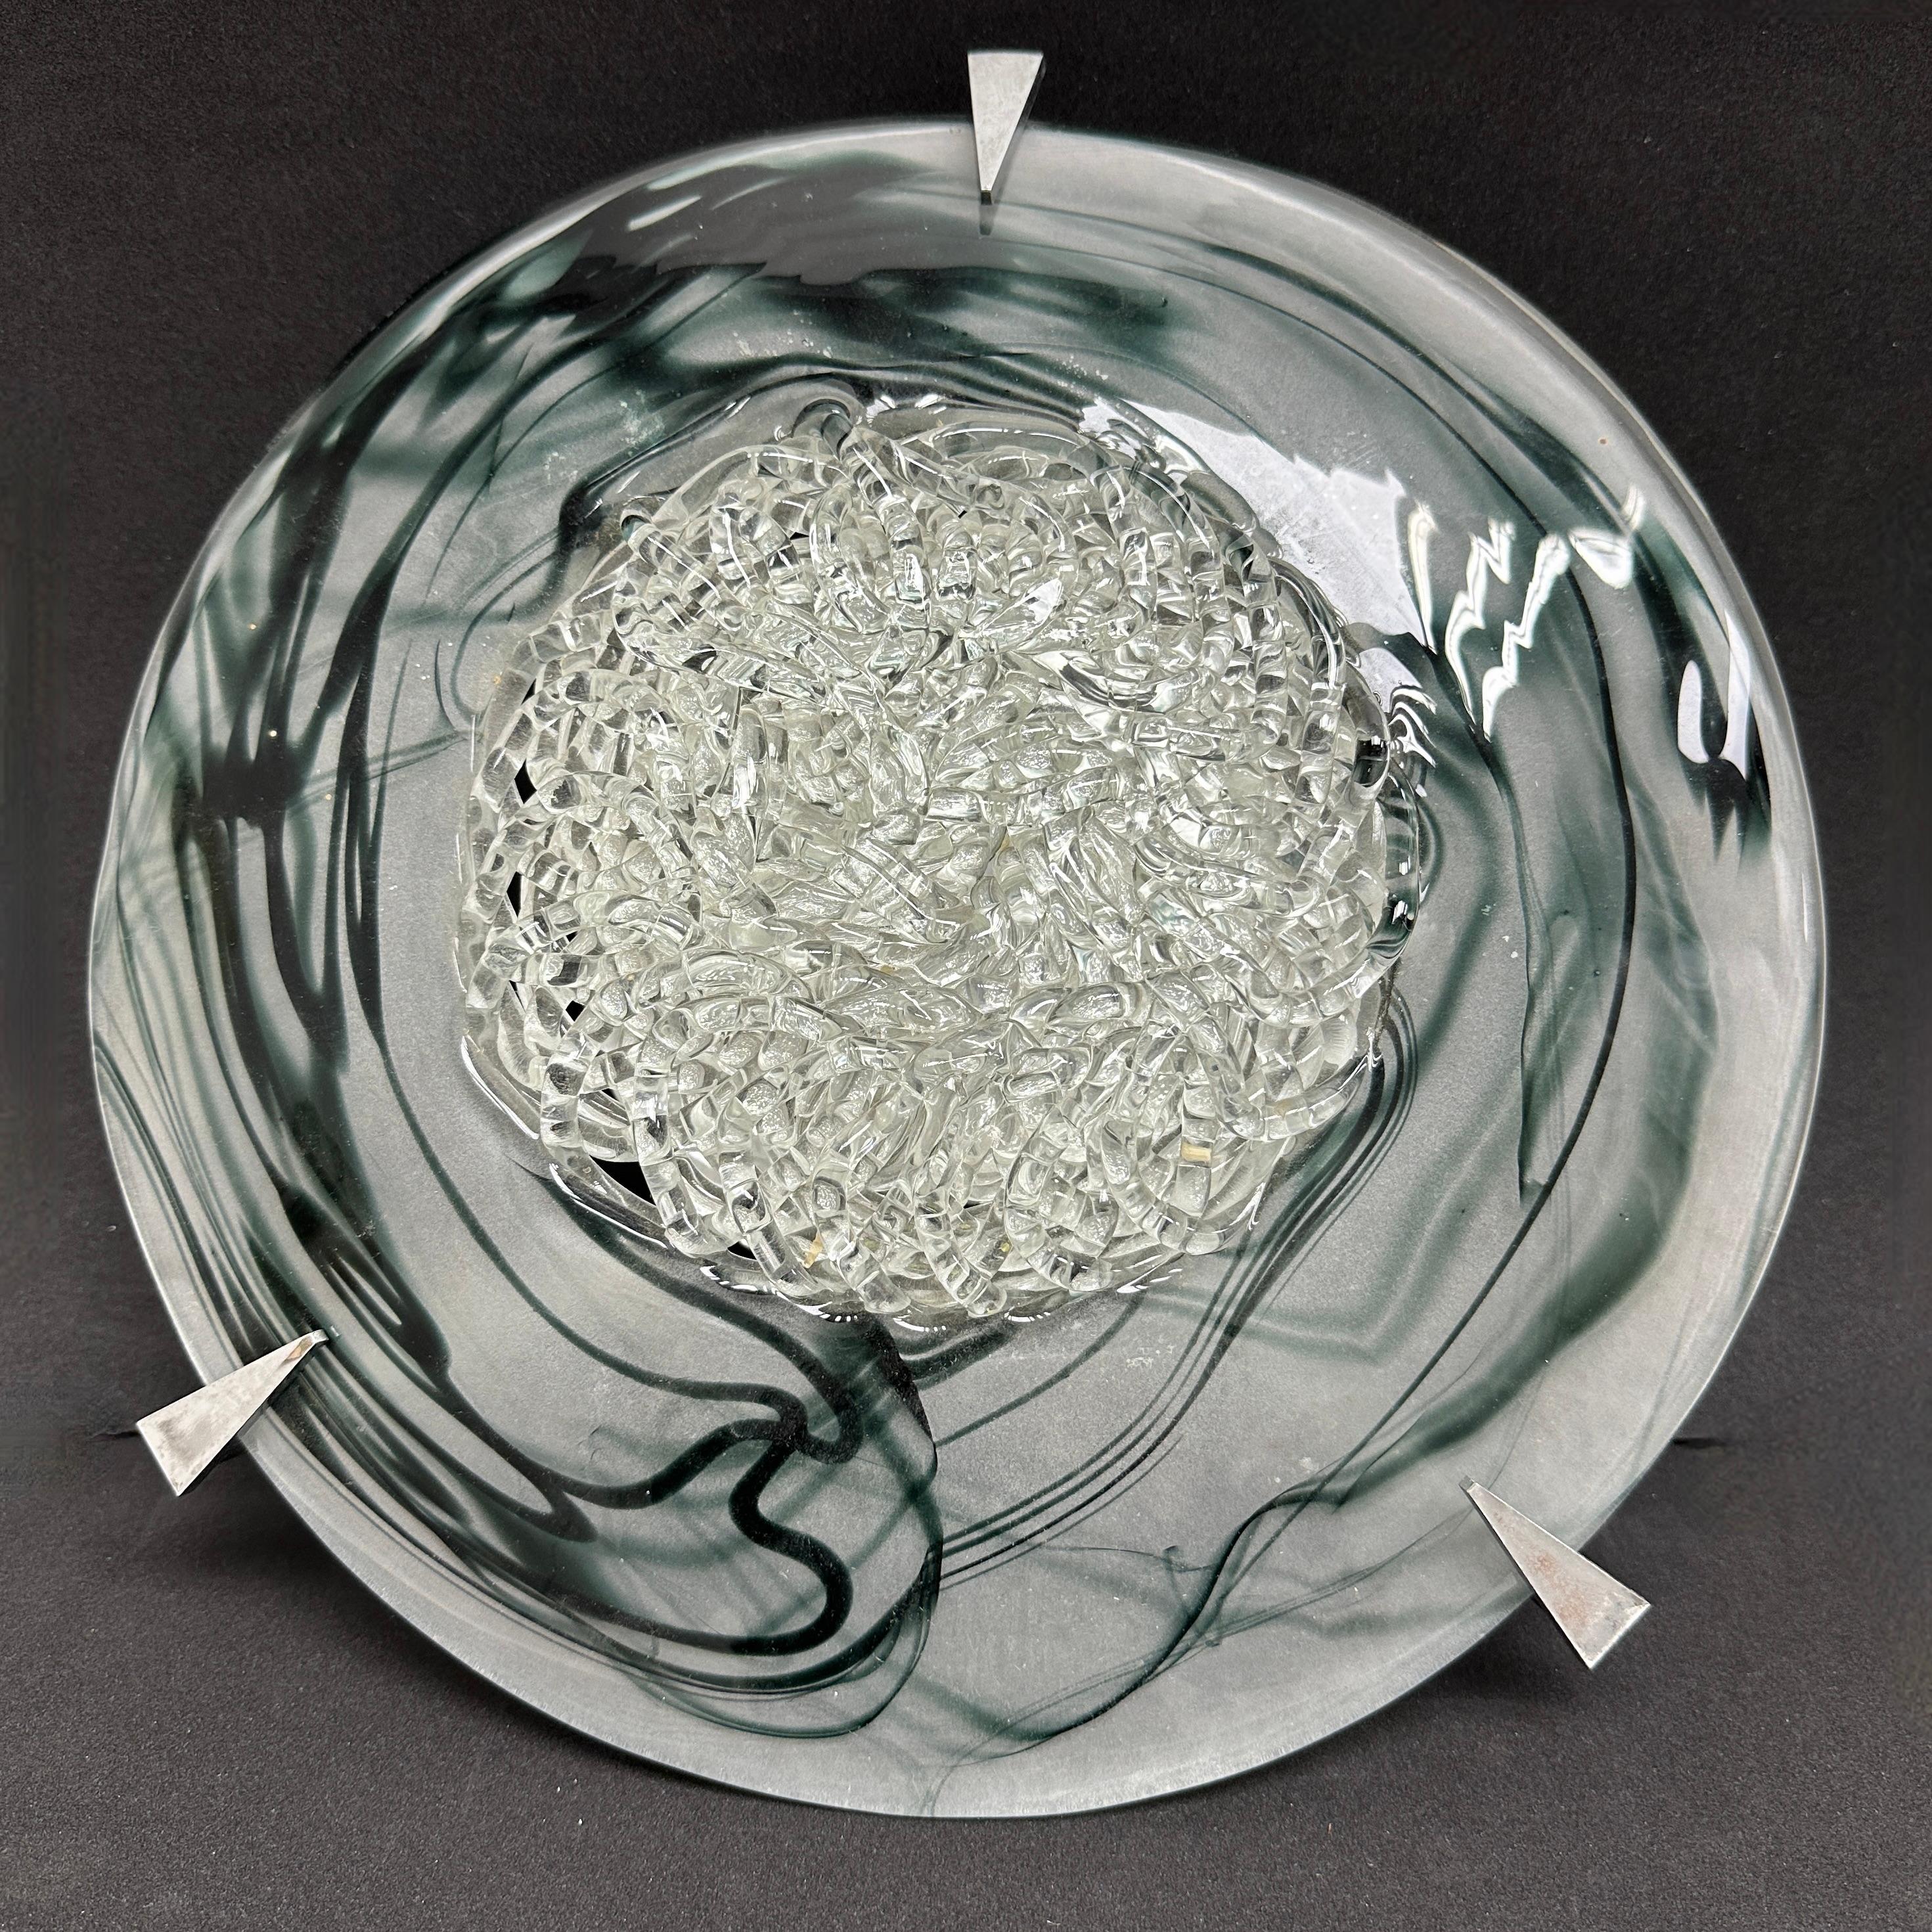 Eine schöne Murano-Glas-Unterputz- oder Wandleuchte. Hergestellt in Italien in den 1980er Jahren. Die Leuchte benötigt 0 europäische E14 / 110 Volt Candelabra Glühbirnen, jede Glühbirne bis zu 60 Watt. Eine schöne Ergänzung für jeden Raum.